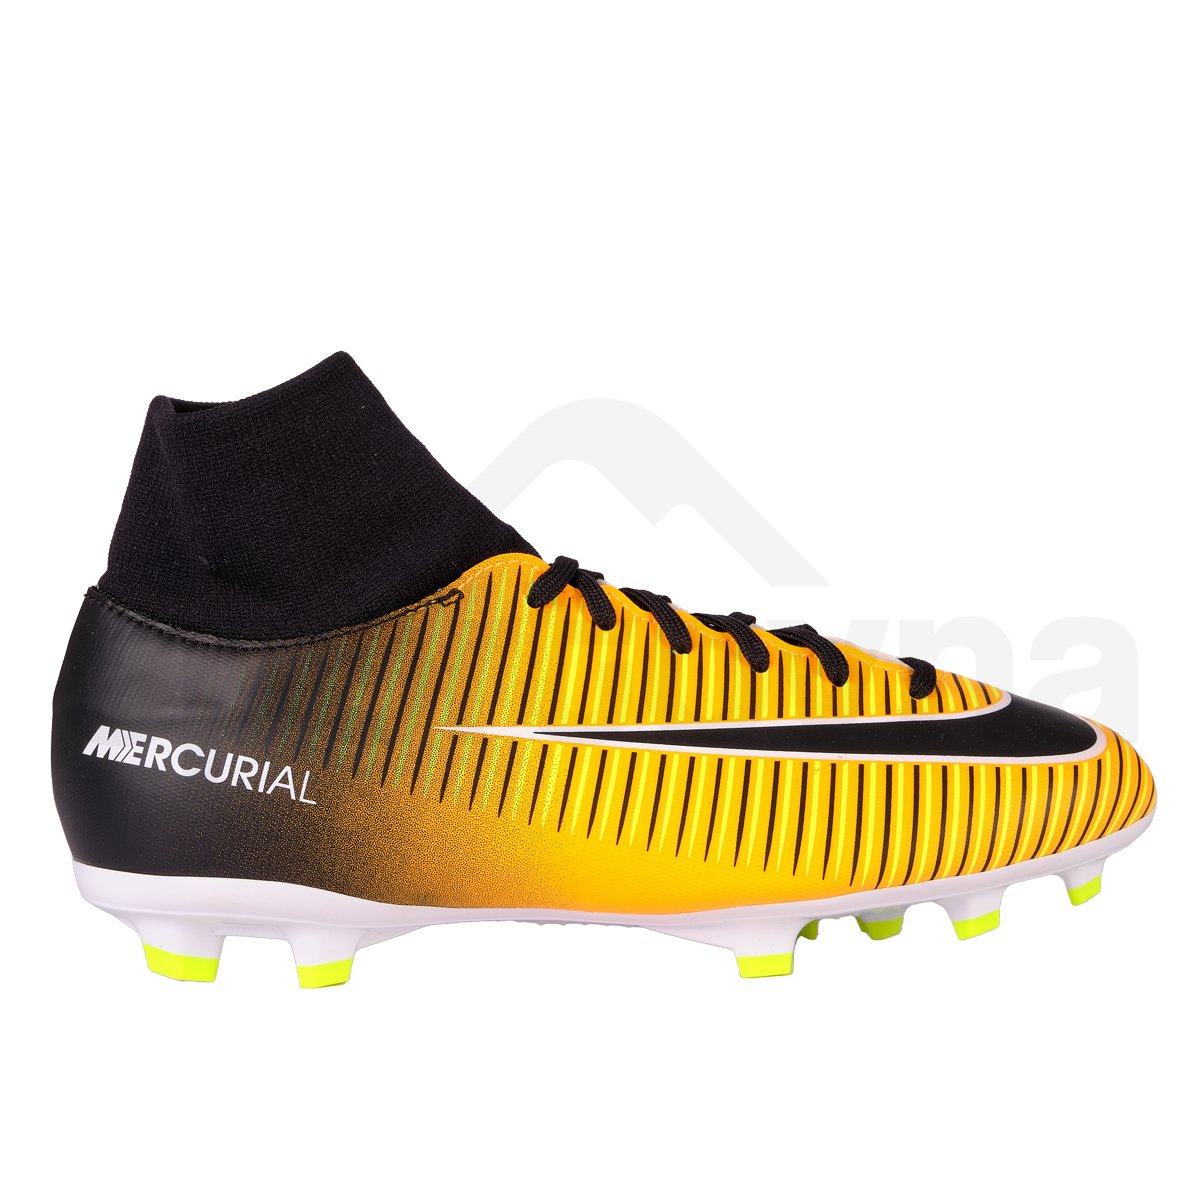 Dětské kopačky Nike Mercurial Victory VI FG DF J - černá/žlutá